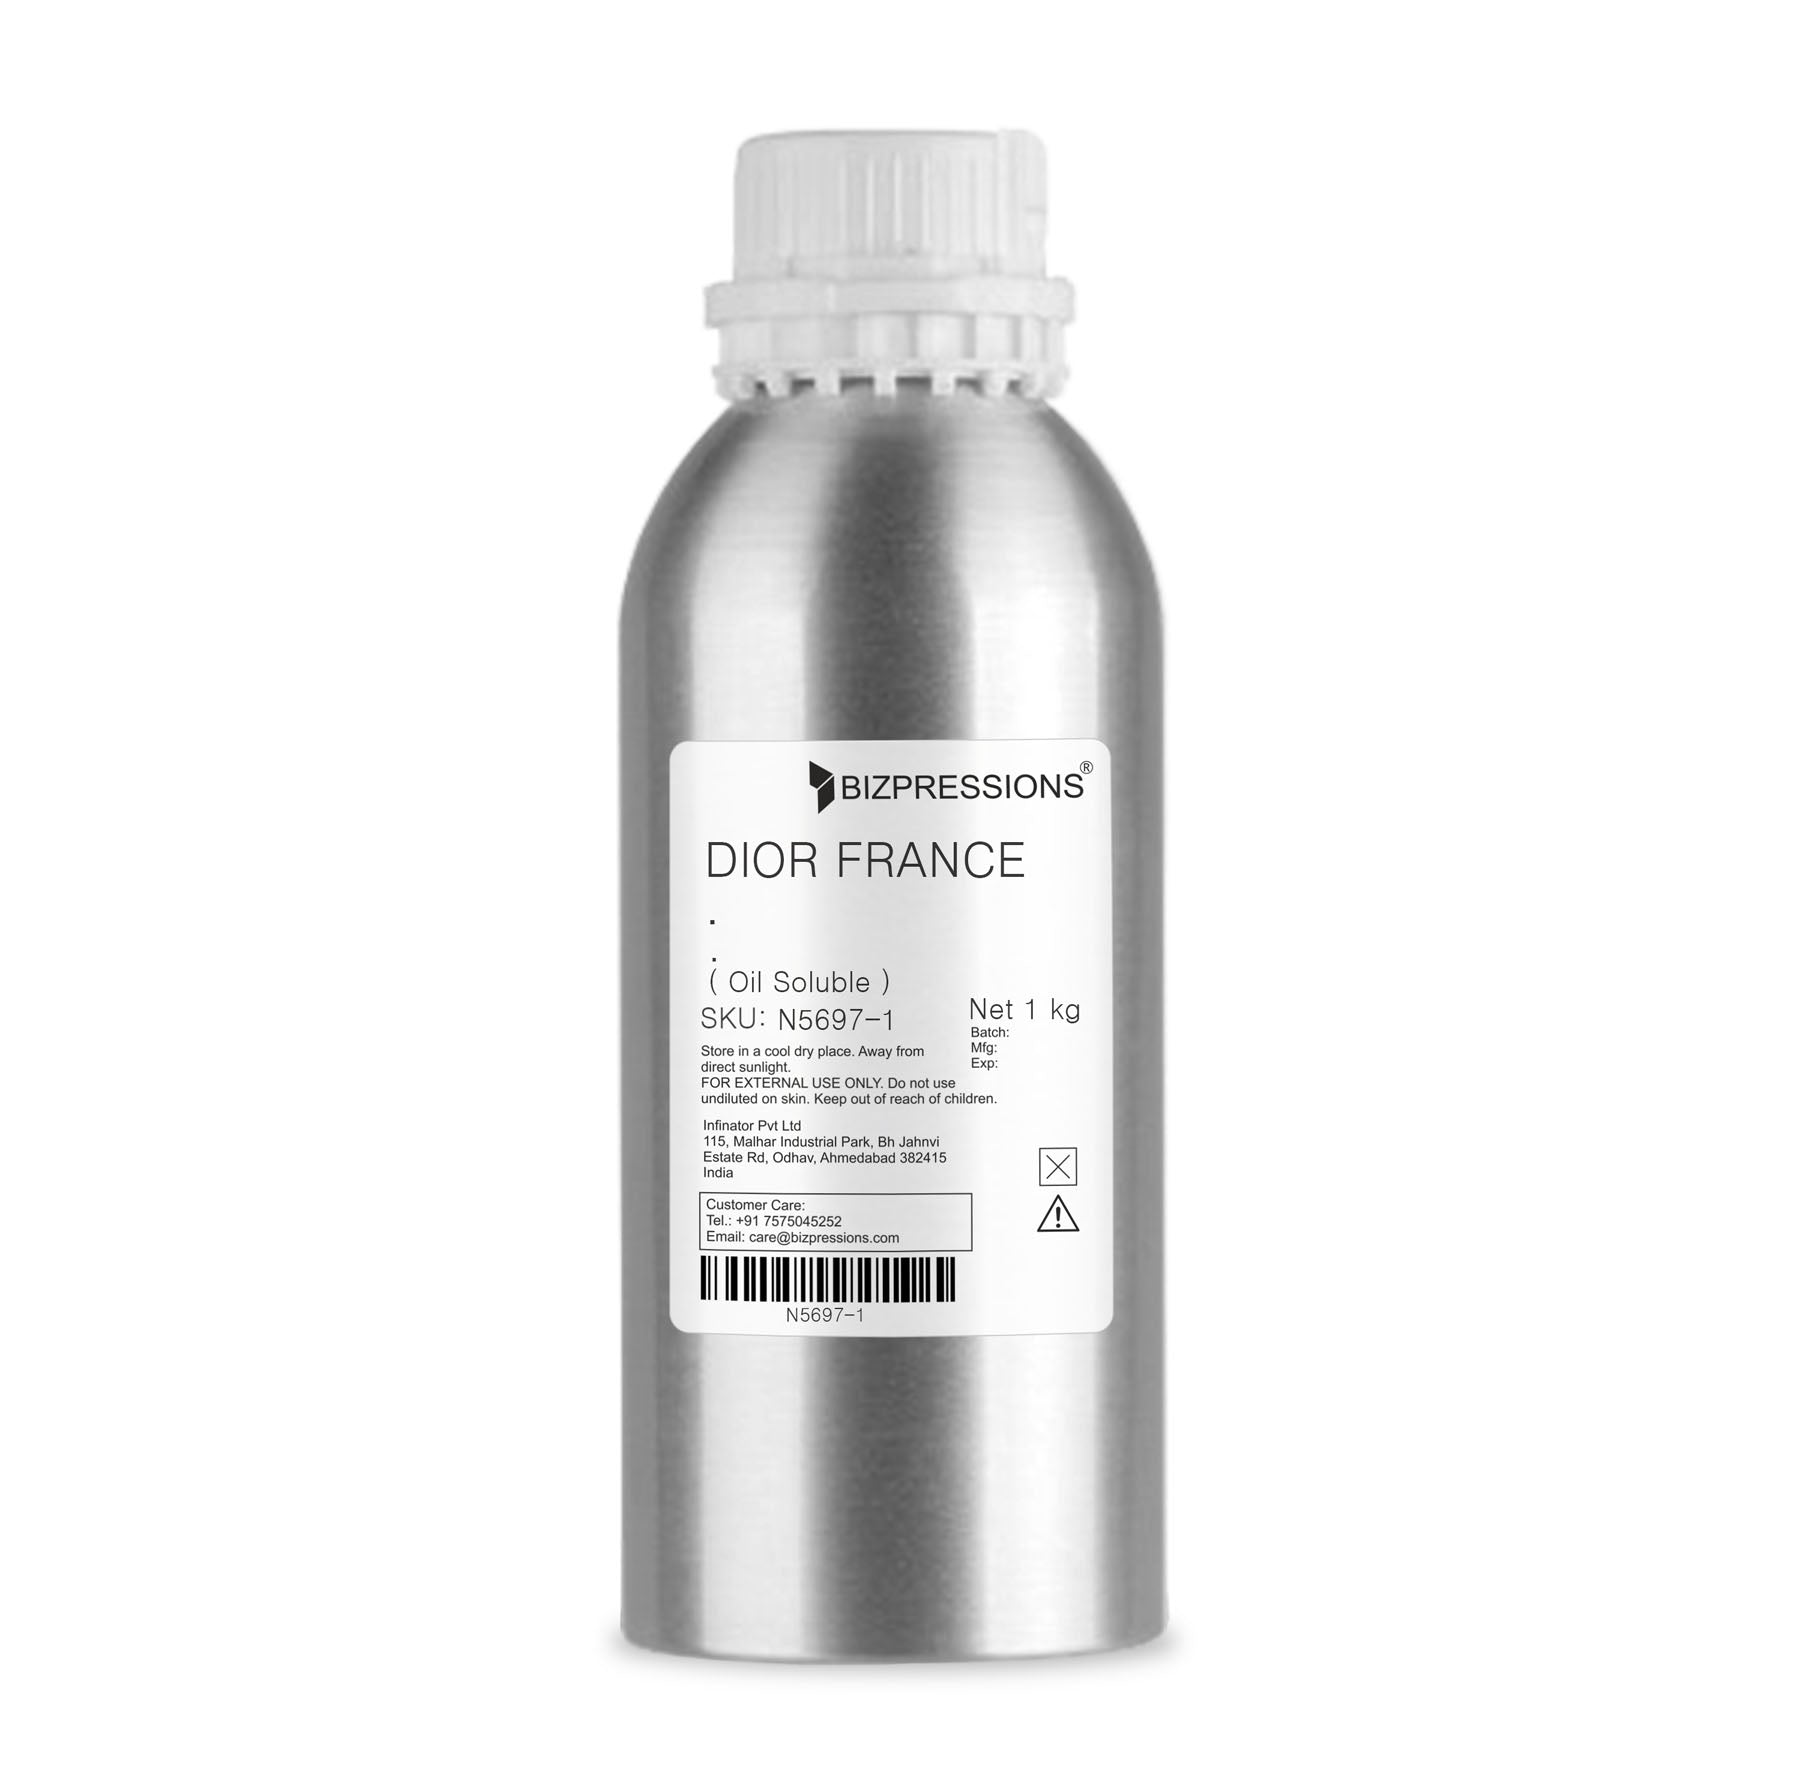 DIOR FRANCE - Fragrance ( Oil Soluble ) - 1 kg